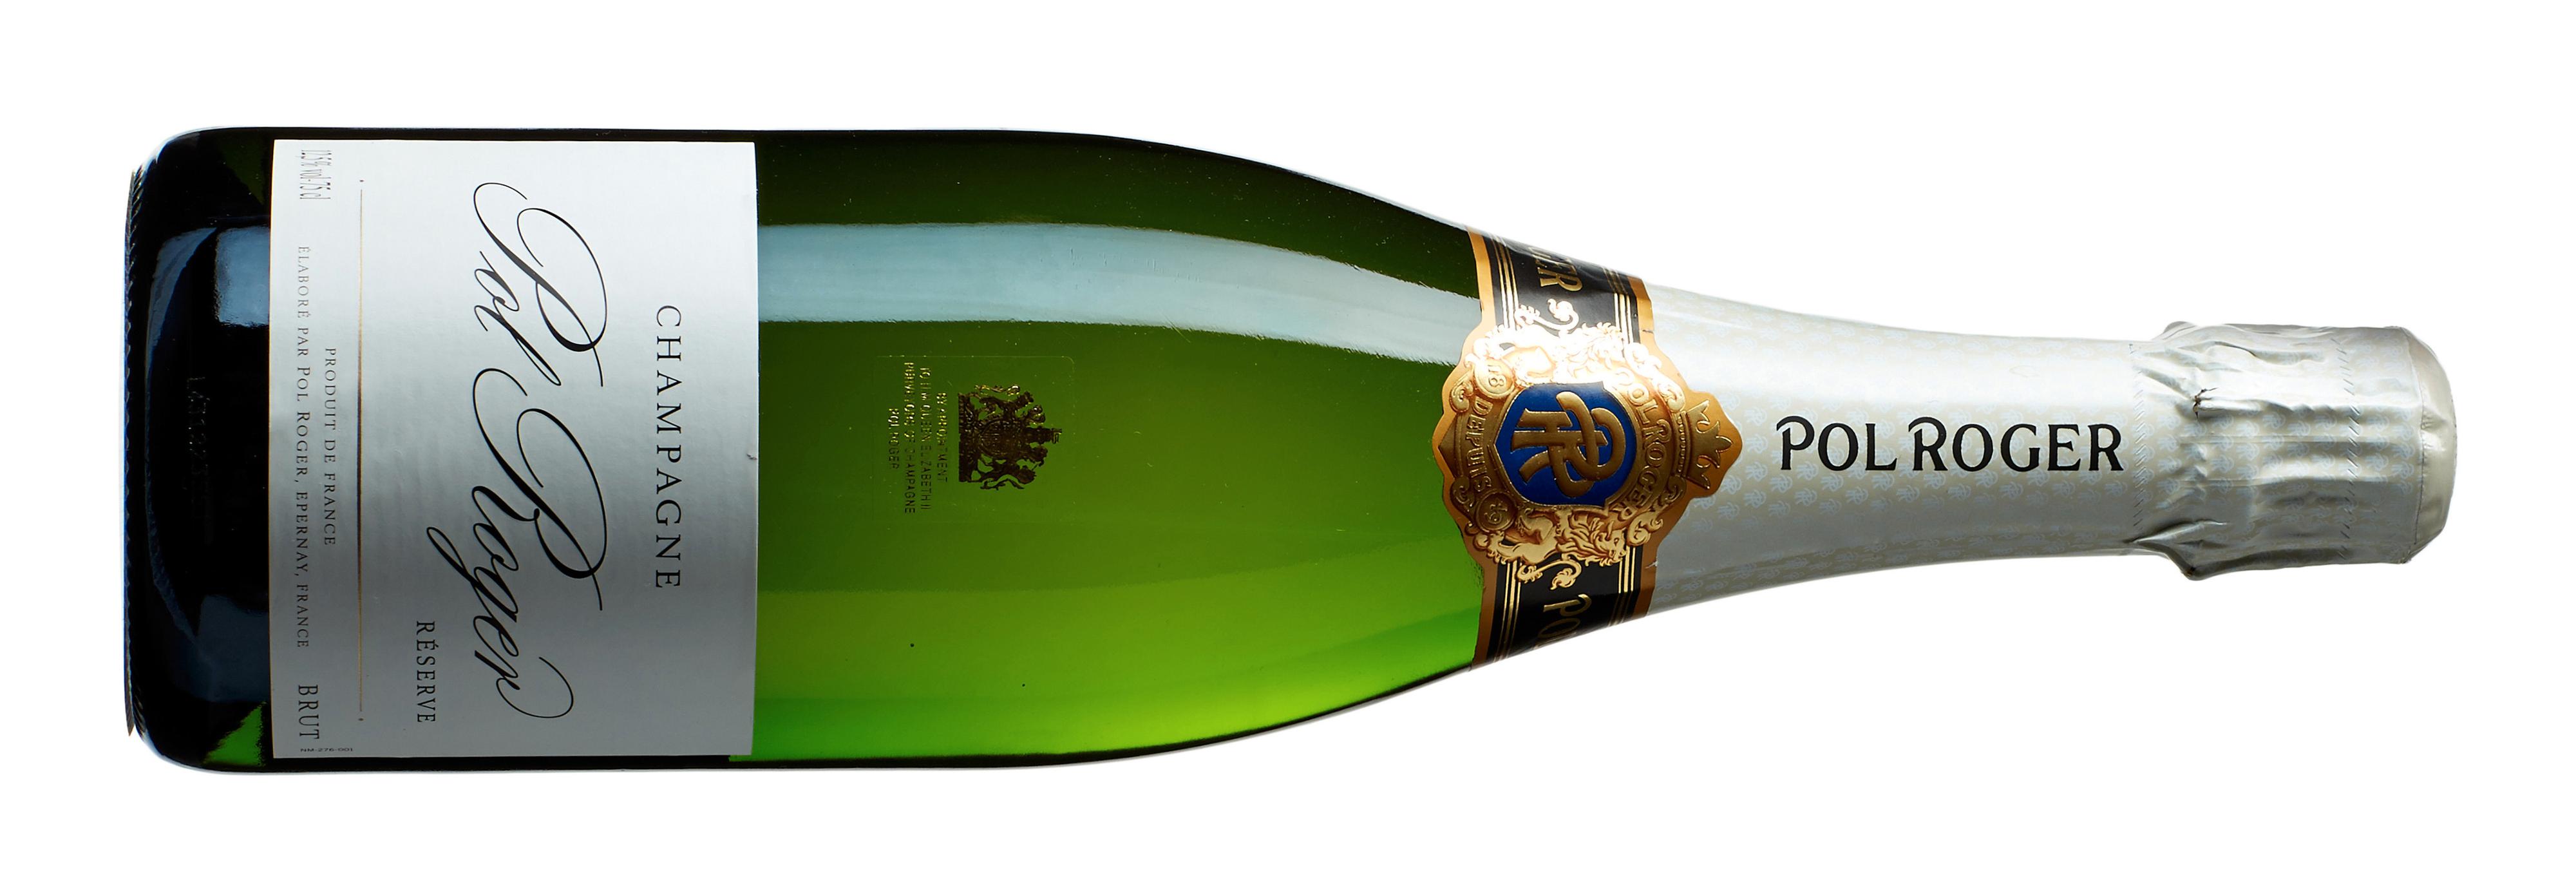 621201 Basisutvalget, kategori 6, Poeng: 90, Land/region: Frankrike, Champagne, Druesort: Chardonnay 33 %, Pinot Meunier 33 %, Pinot Noir 33 %